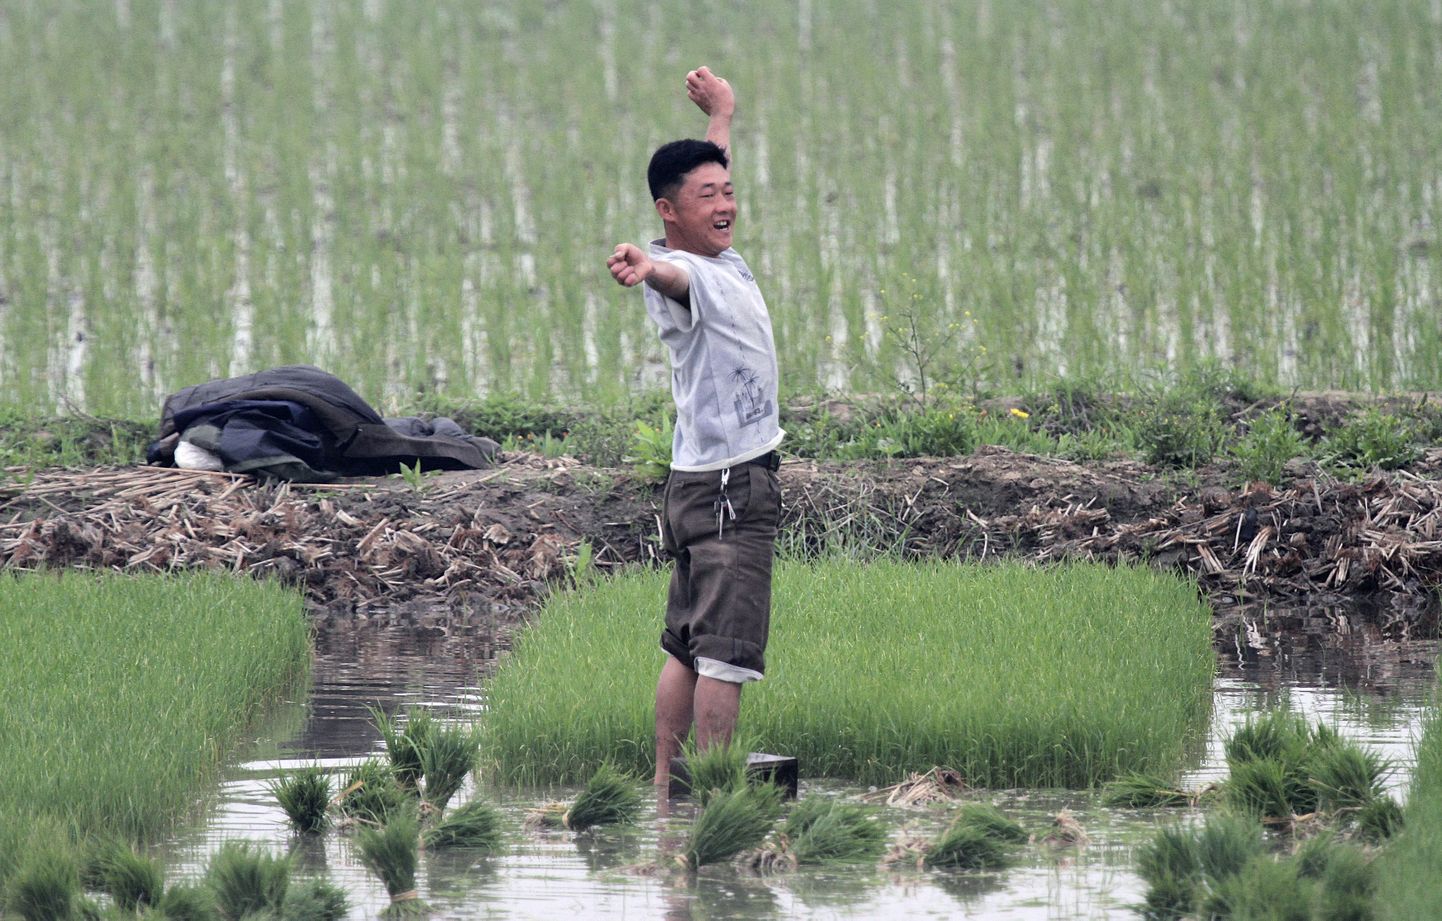 Põhjakorealane töötamas riisipõllul